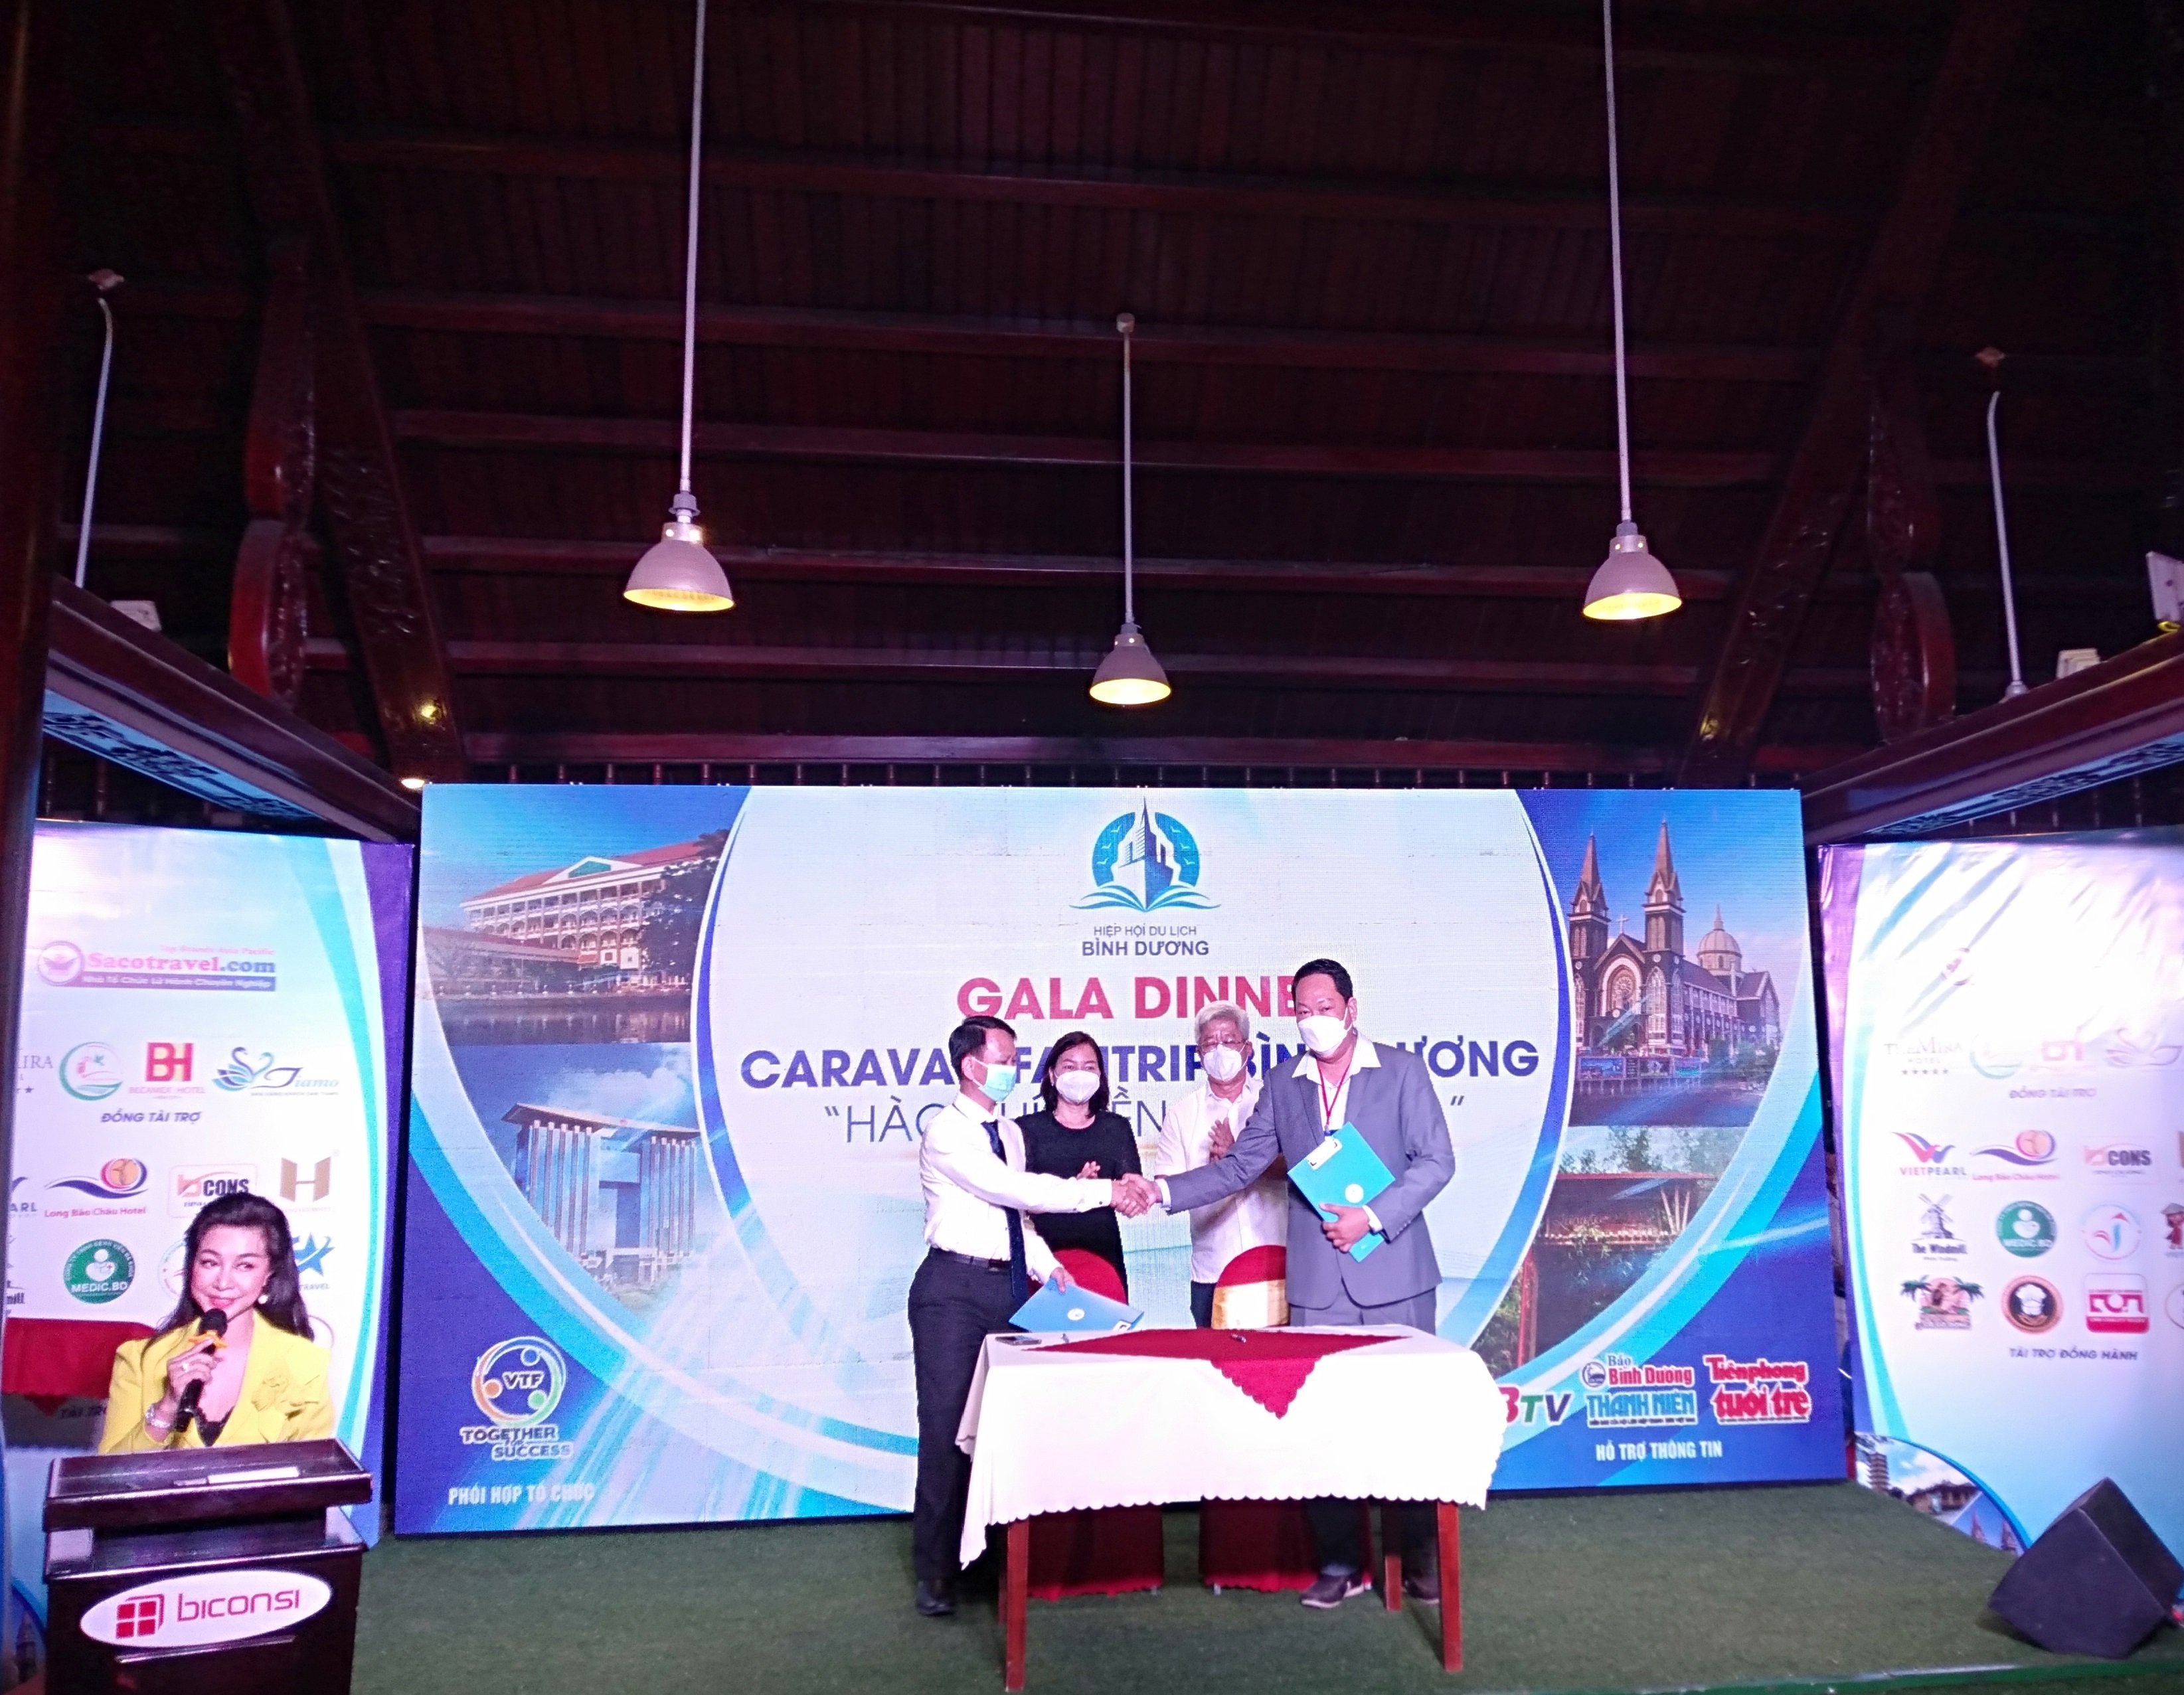 Hiệp hội Du lịch tỉnh Bình Dương đã ký kết hợp tác phát triển du lịch với Diễn đàn doanh nghiệp vừa và nhỏ Việt Nam để thúc đẩy du lịch địa phương sớm phục hồi và phát triển.